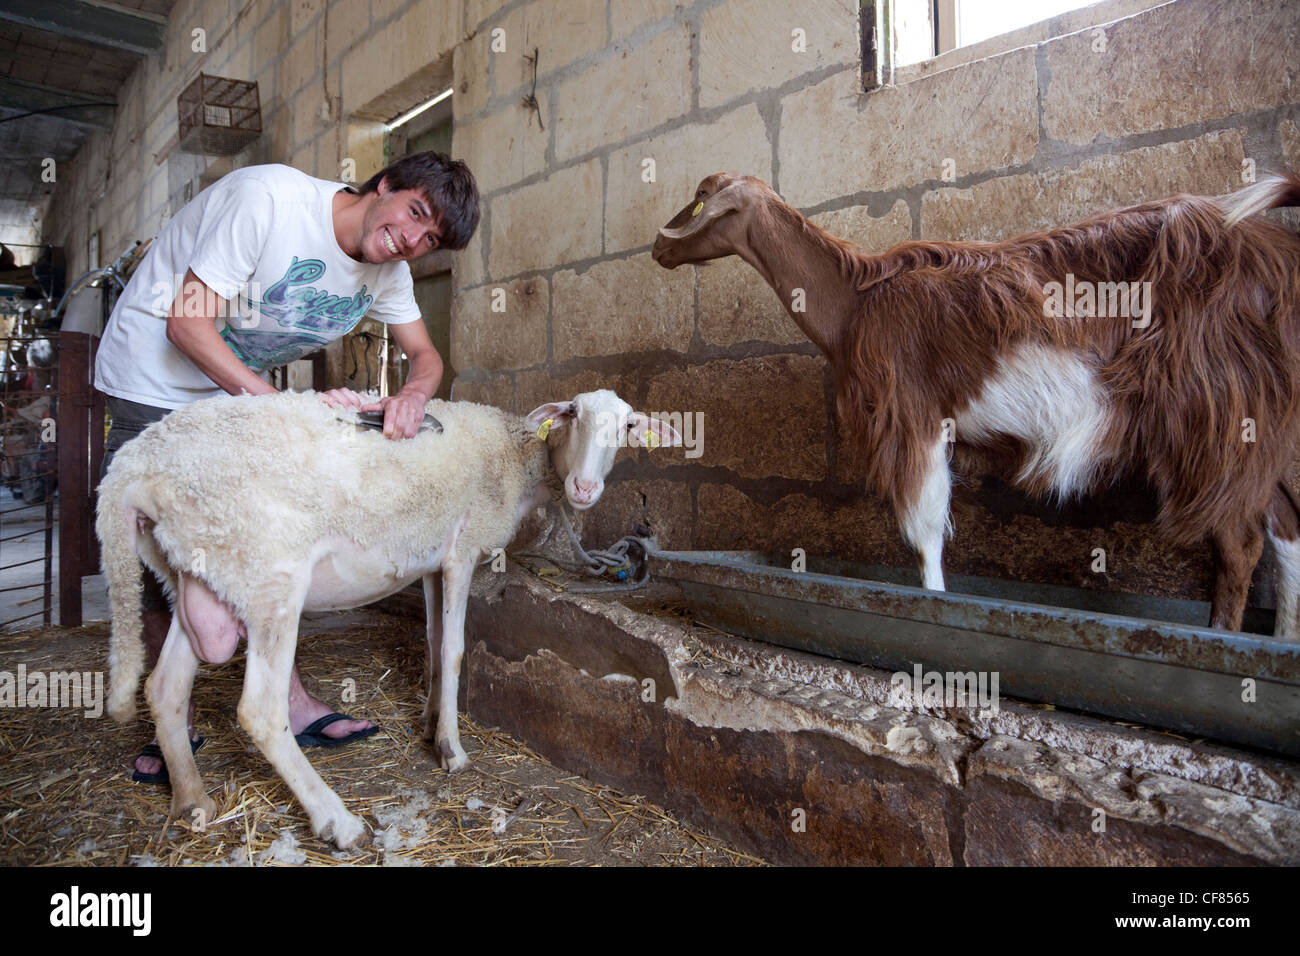 Un giovane turista taglia il pelo di una pecora durante una giornata presso una pecora-farm come parte di una esperienza di fattoria a Gozo, Malta. Foto Stock